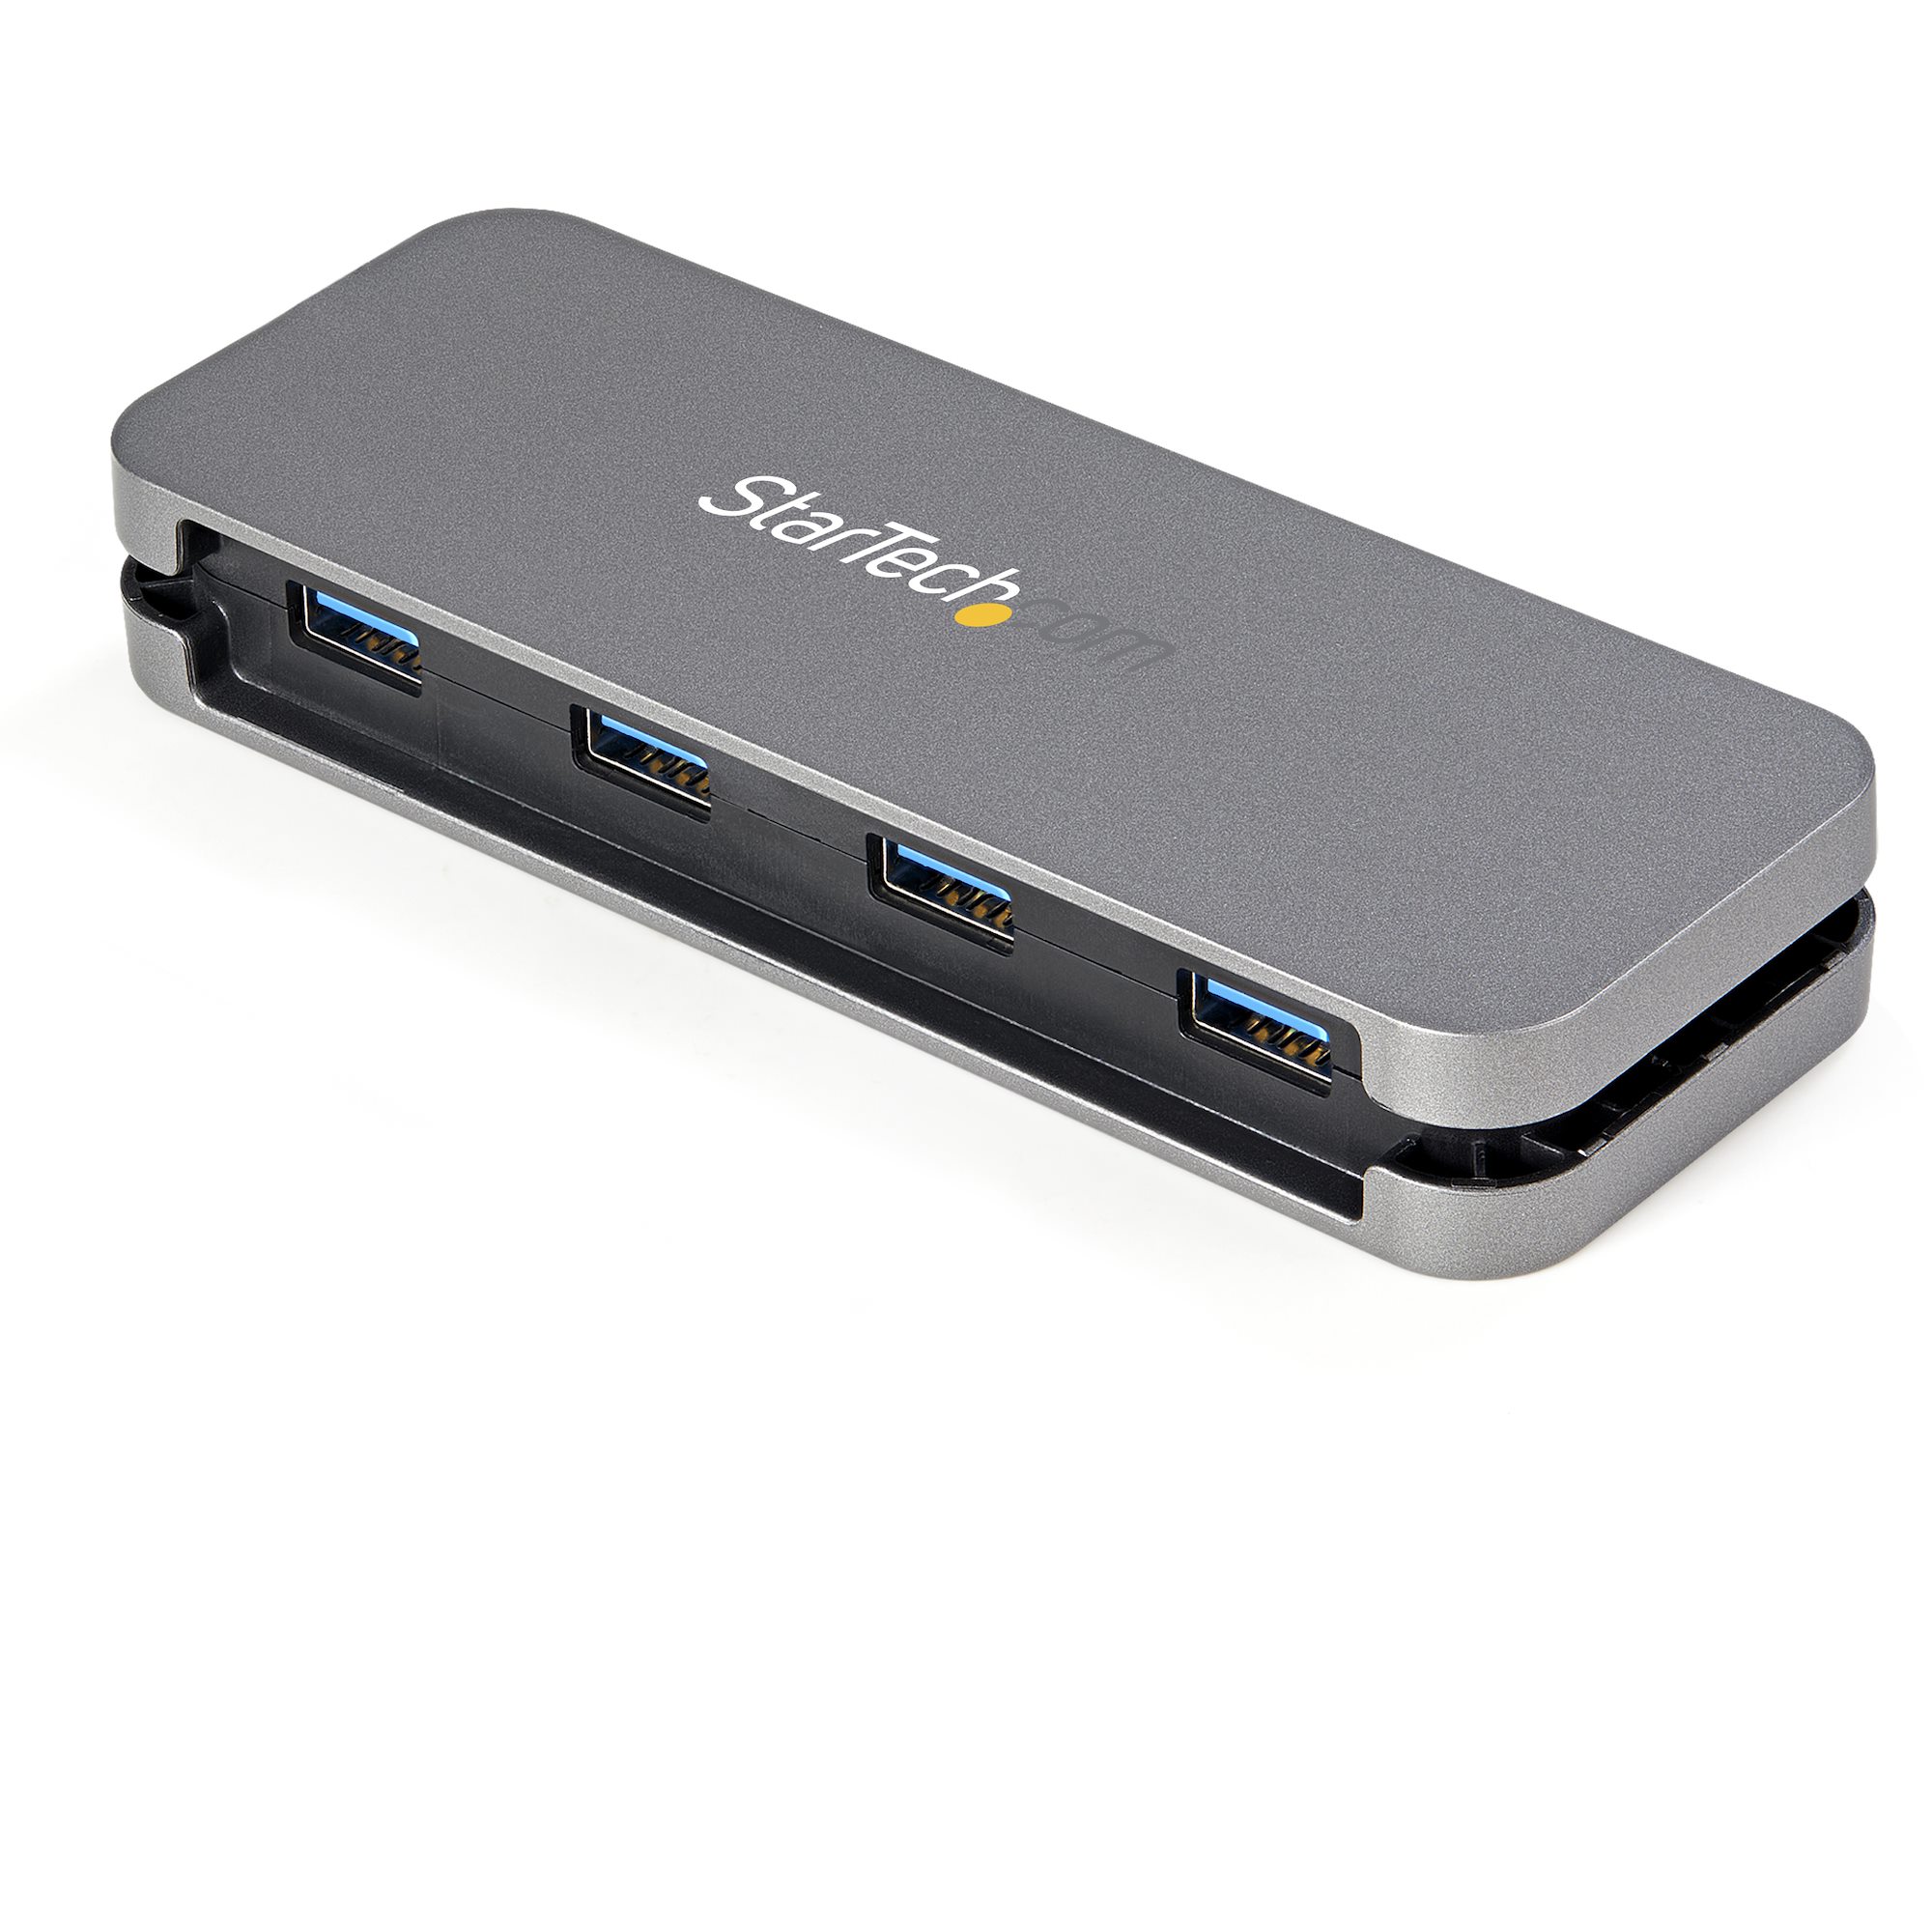 4-Port USB 2.0 Aluminum Hub for Chromebooks, Laptops, and Desktops